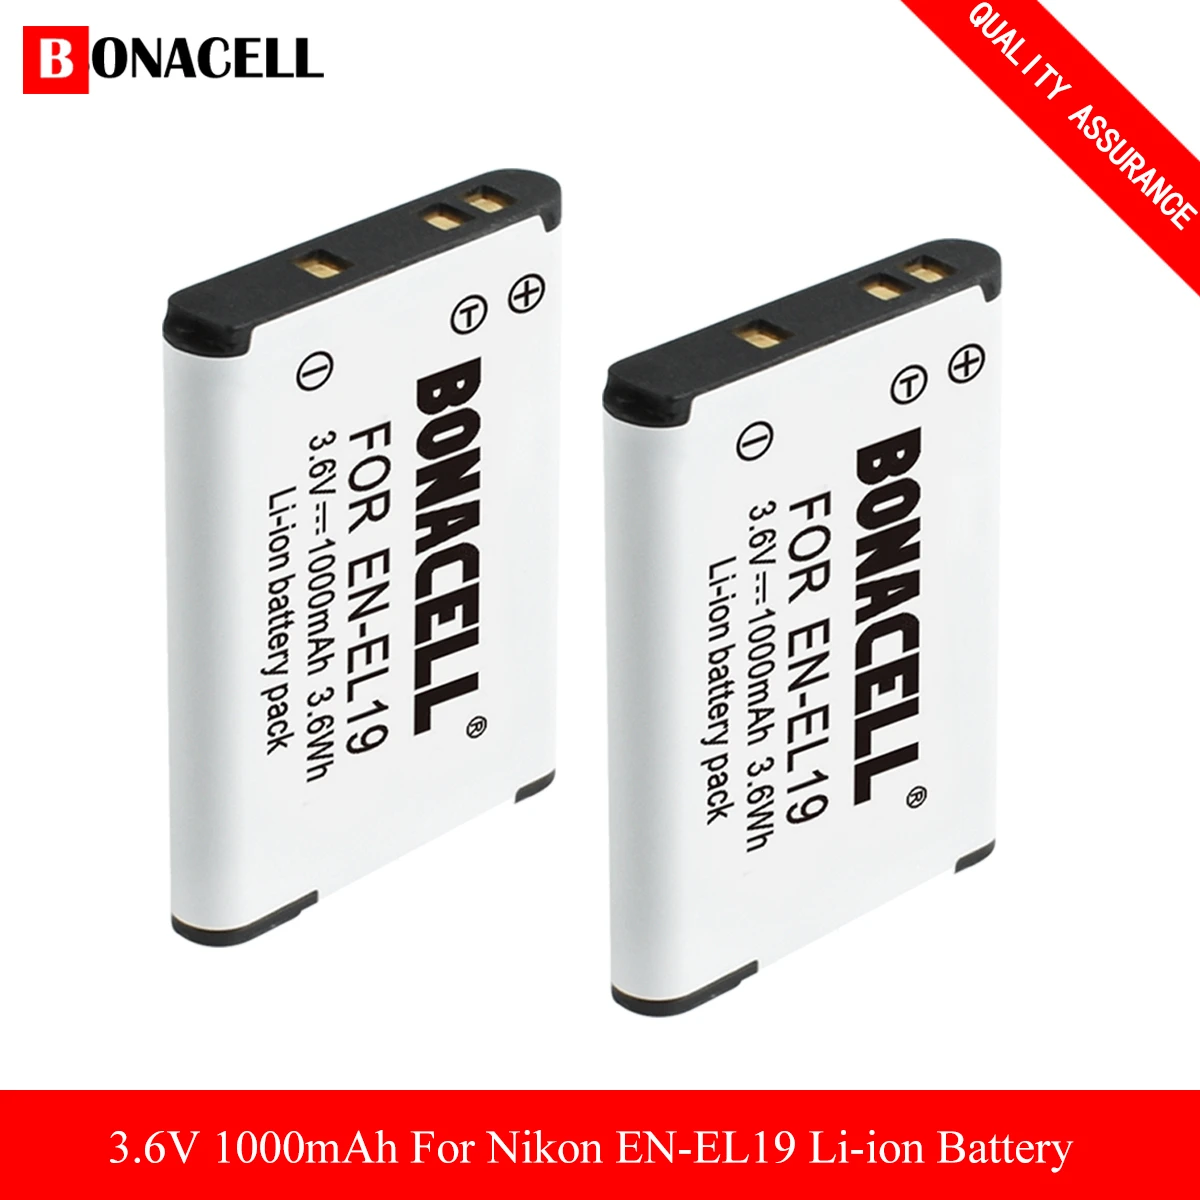 En-el19 Batteries For Nikon Coolpix W150 S32 S100 S2800 S3200 S3300 S3500  S3600 S4100 S4200 S4300 S5200 S5300 S6500 S6600 S6800 - Rechargeable  Batteries - AliExpress